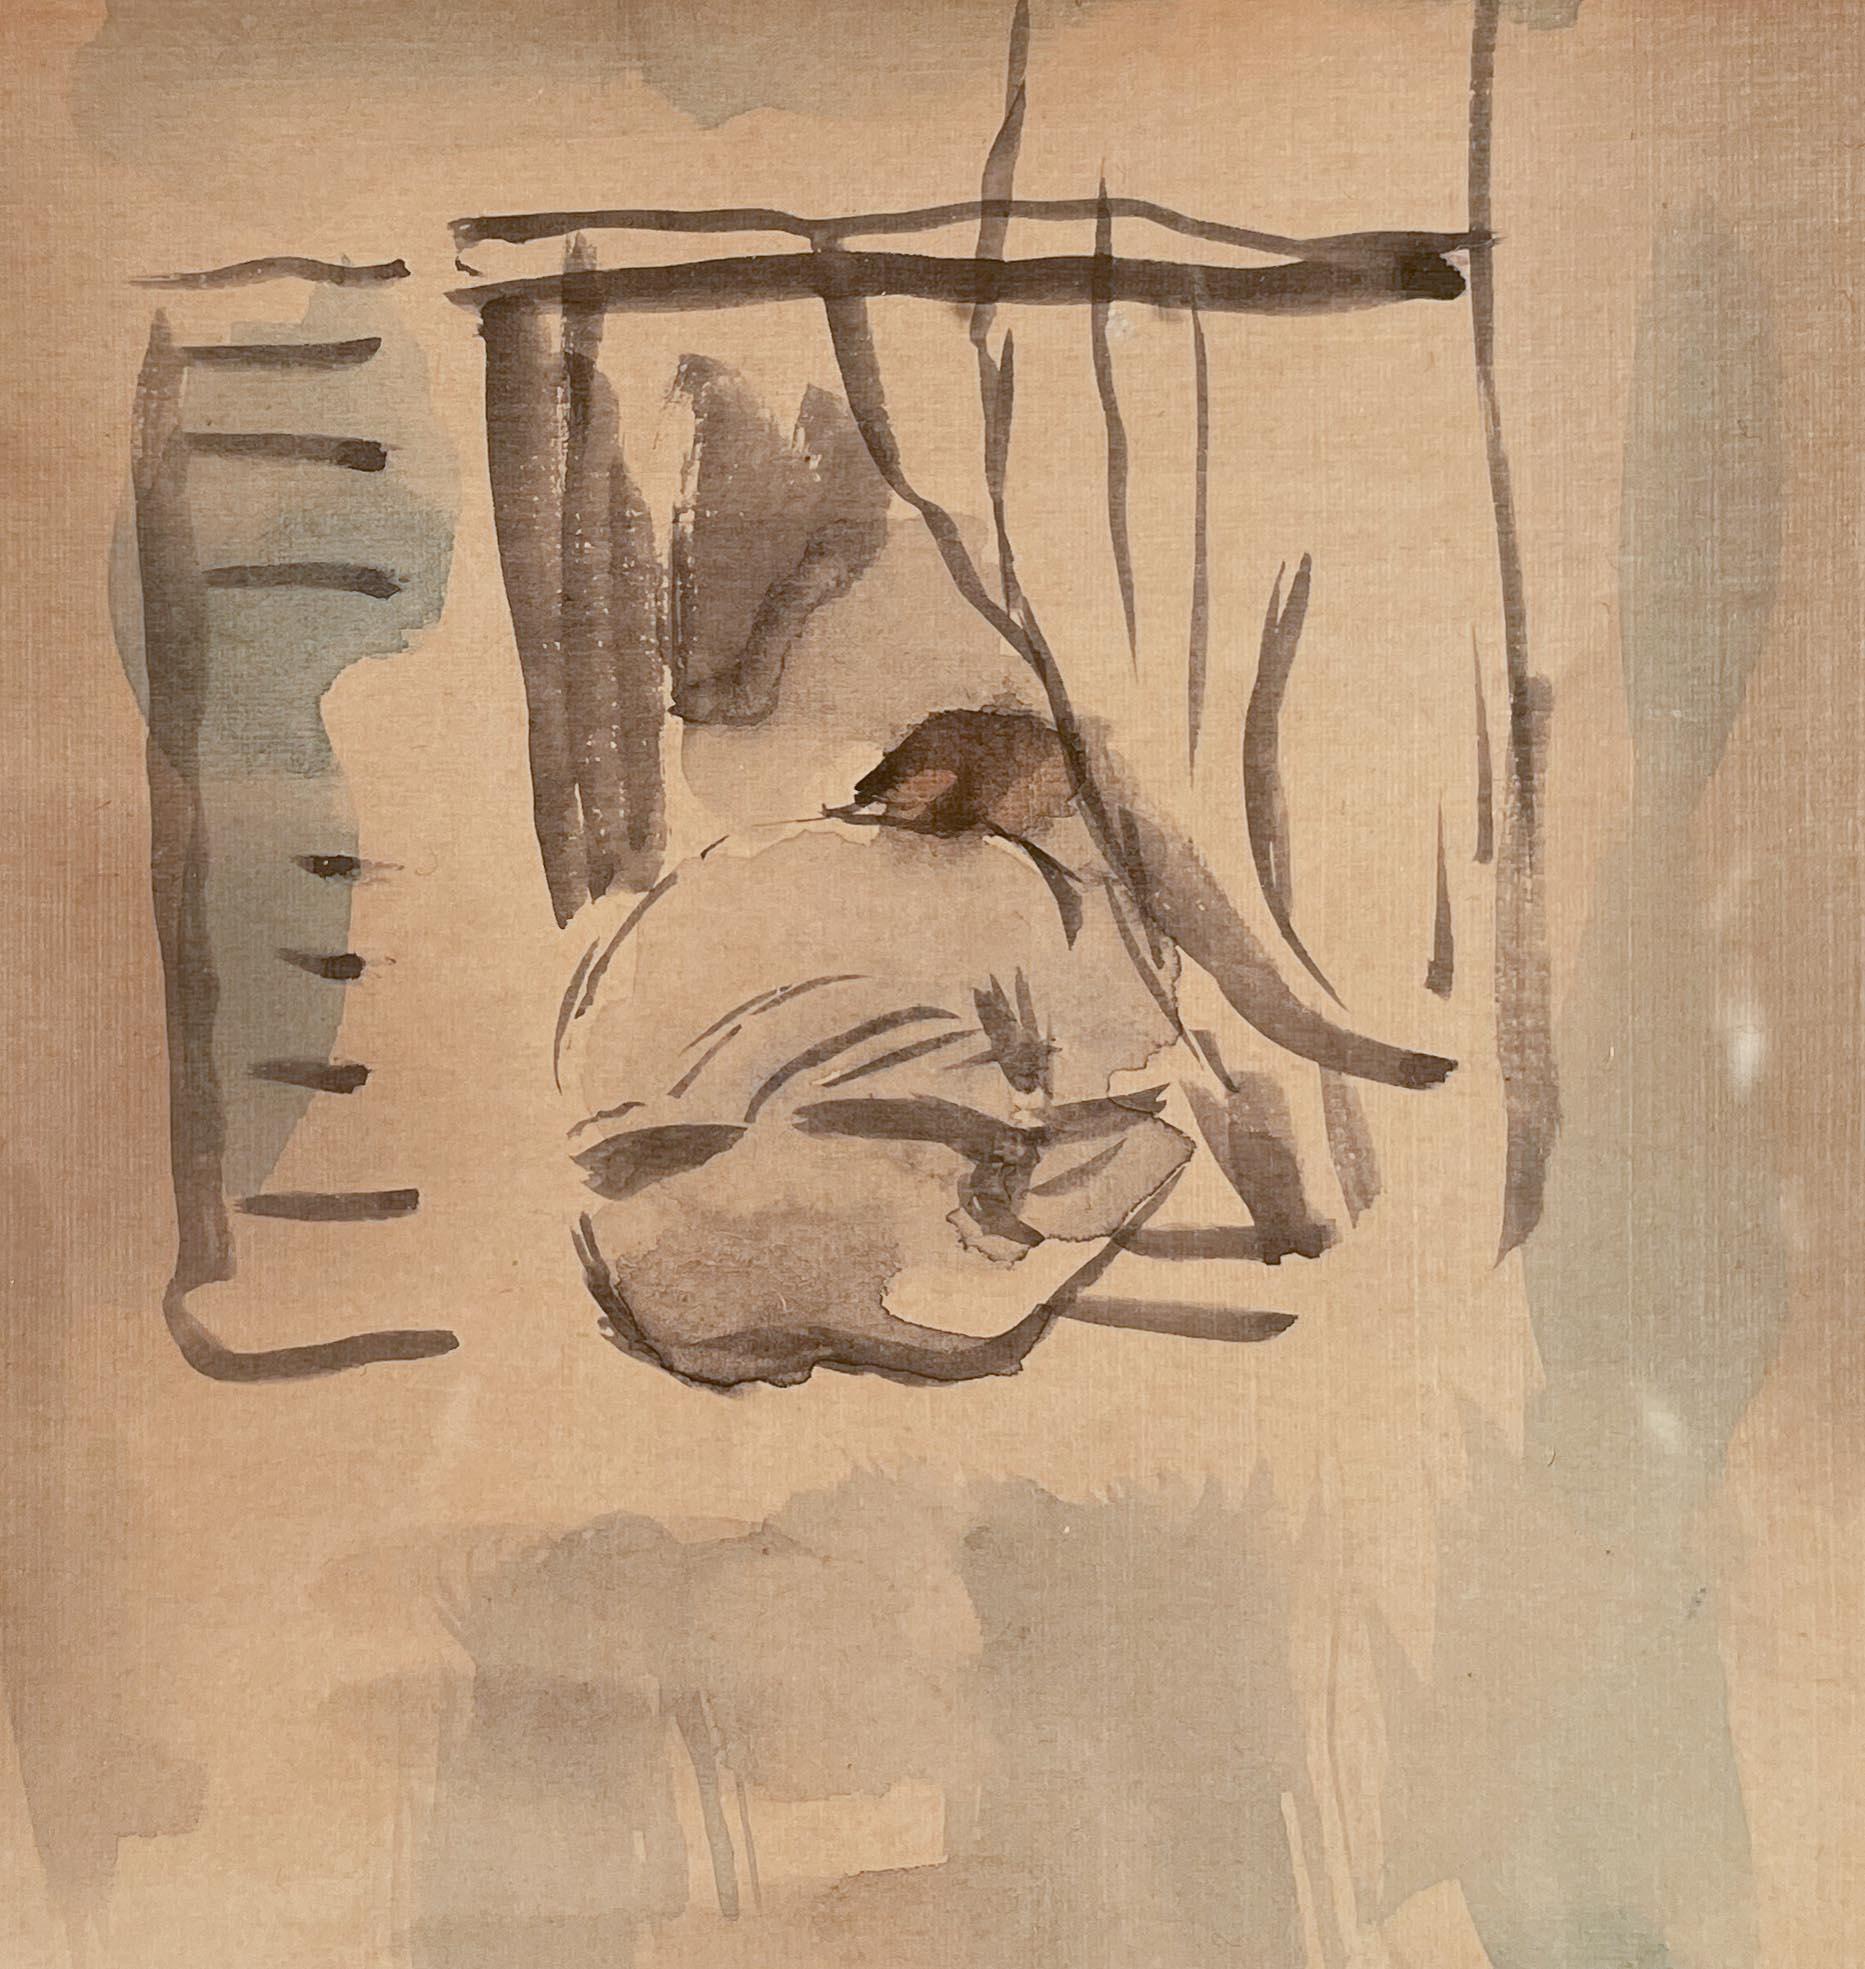 Figur, die aus dem Fenster schaut von Jules Pascin (1885-1930)
Aquarell auf Papier
5 ¼ x 4 ½ Zoll ungerahmt (13,335 x 11,43 cm)
13 ¾ x 10 ⅜ Zoll gerahmt (34,925 x 27,002 cm)
Signiert und datiert unten links
Gestempelt mit einer